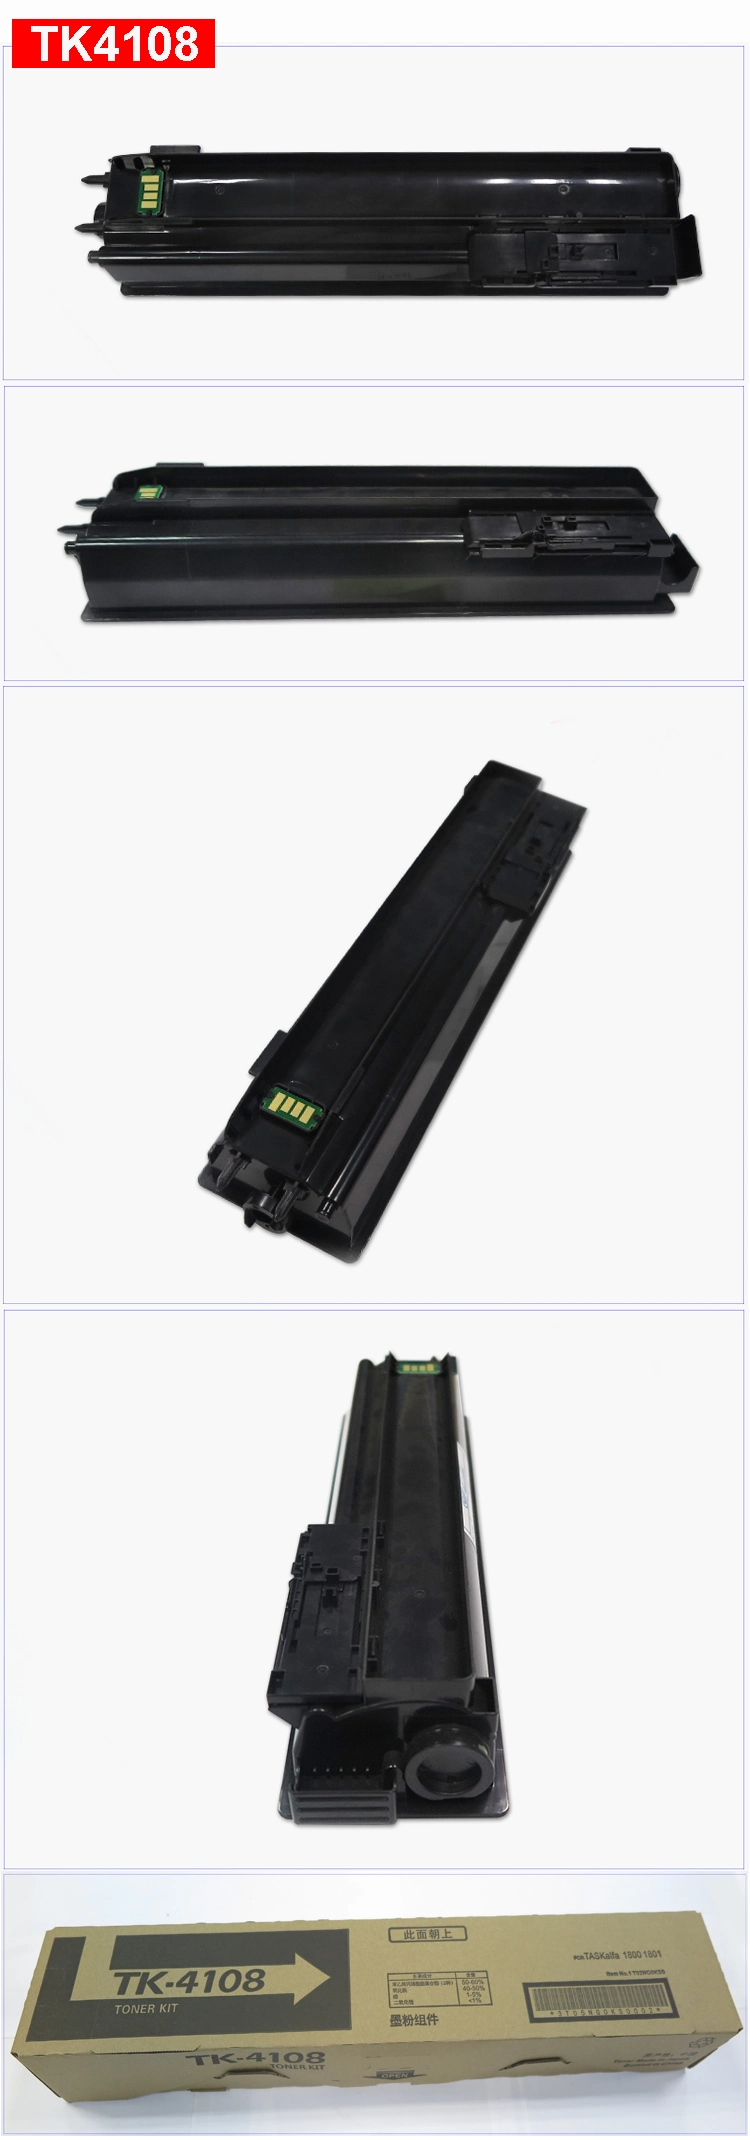 OEM Toner Cartridge Kyocera Tk4180 for Use in Kyocera Taskalfa 1800 1801 2200 2201 2010 2211 Copiers